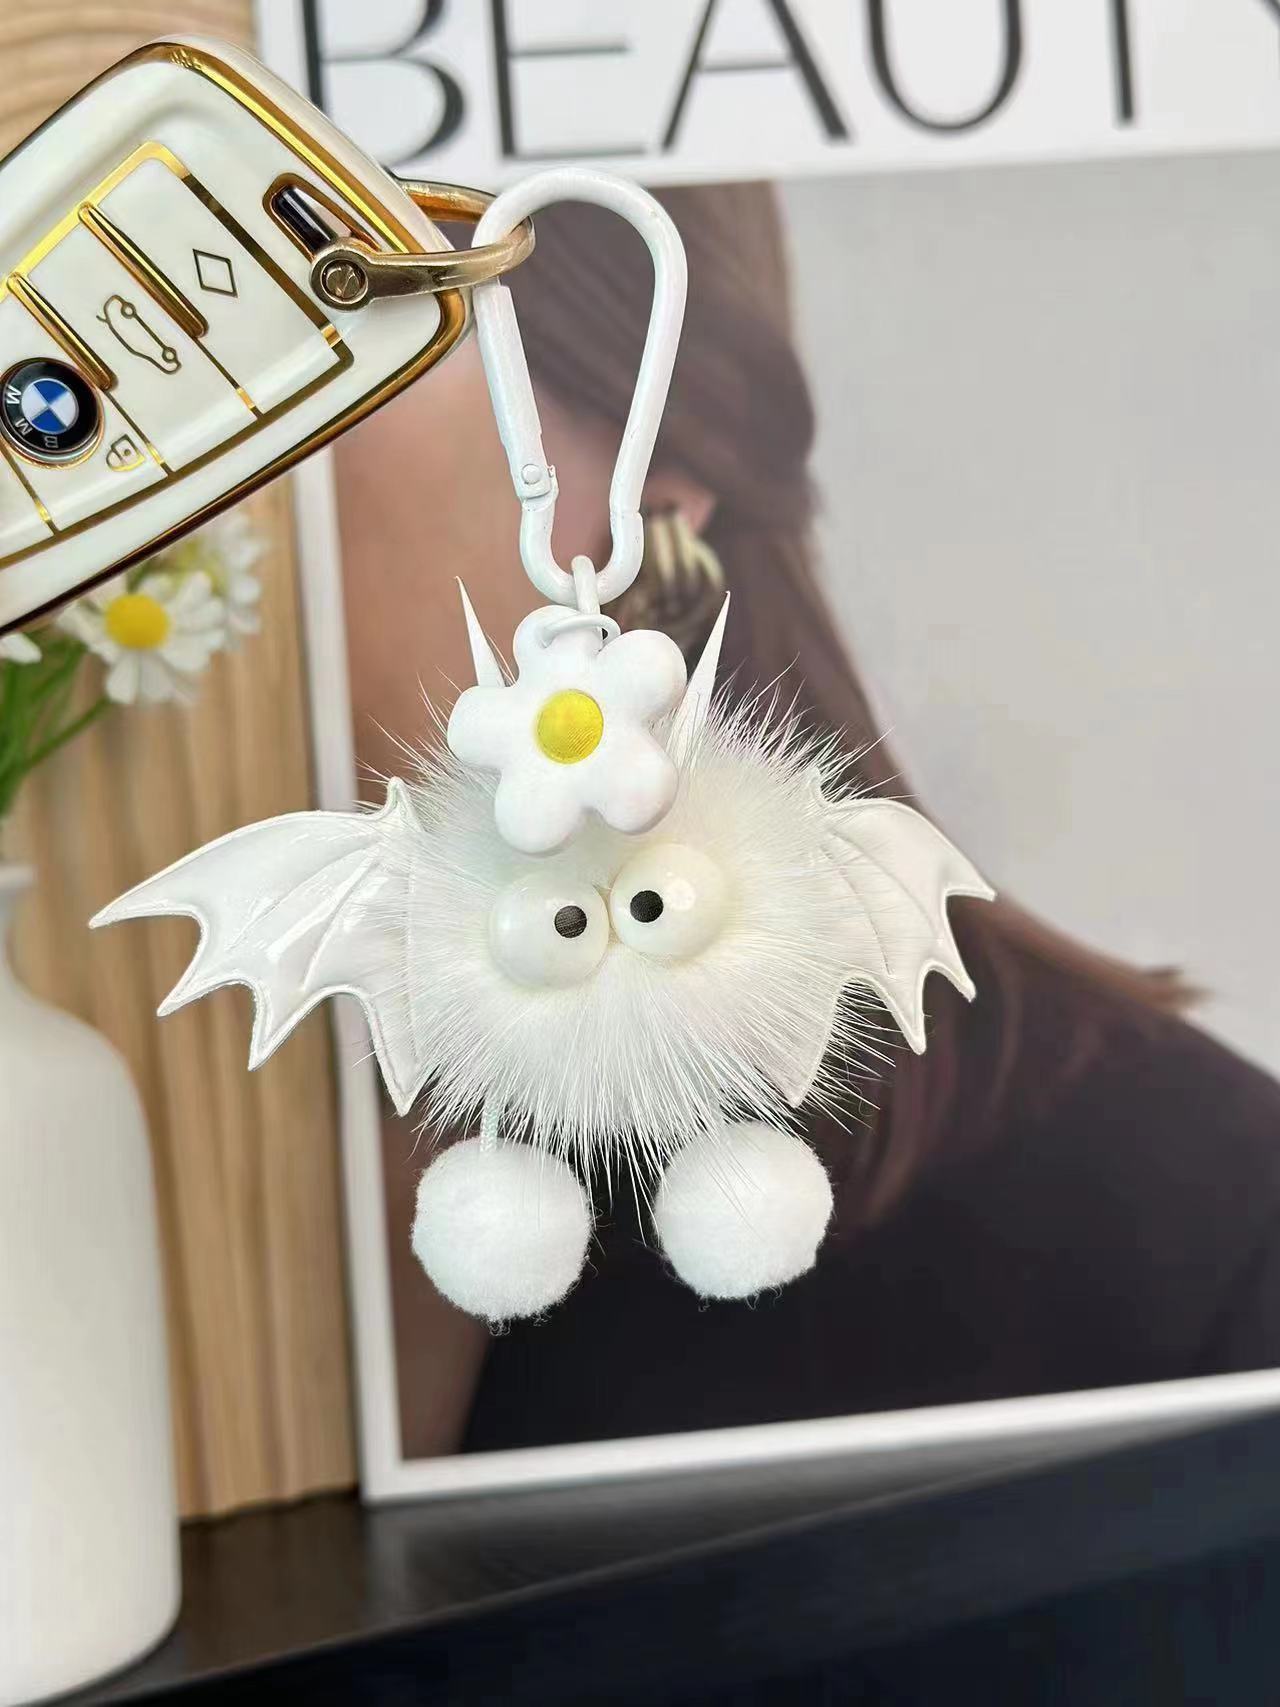 Cute little monster bag pendant